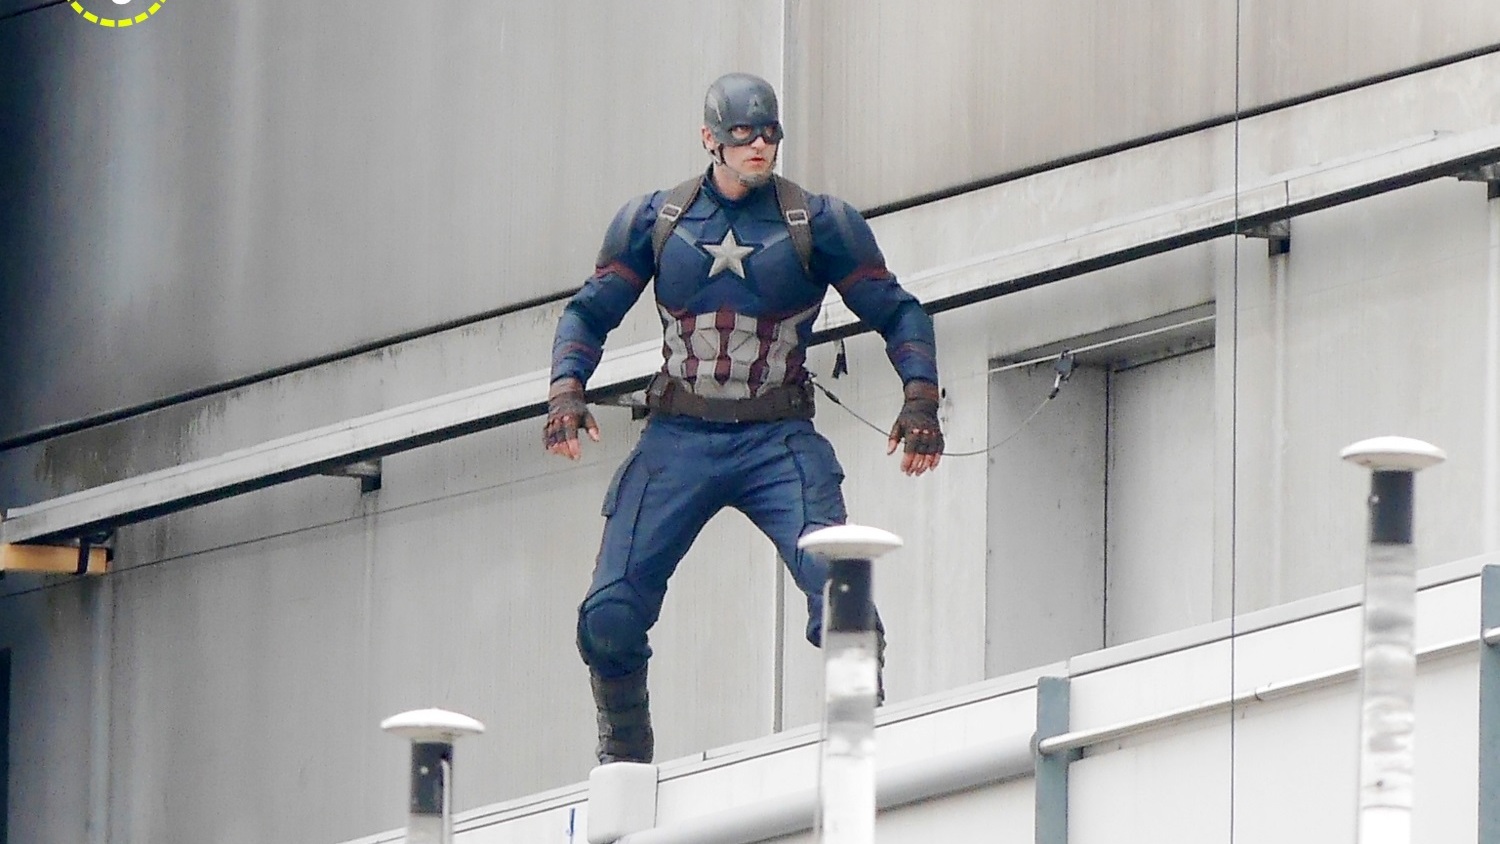 Eerste blik op Black Panther op setfoto's 'Captain America: Civil War'